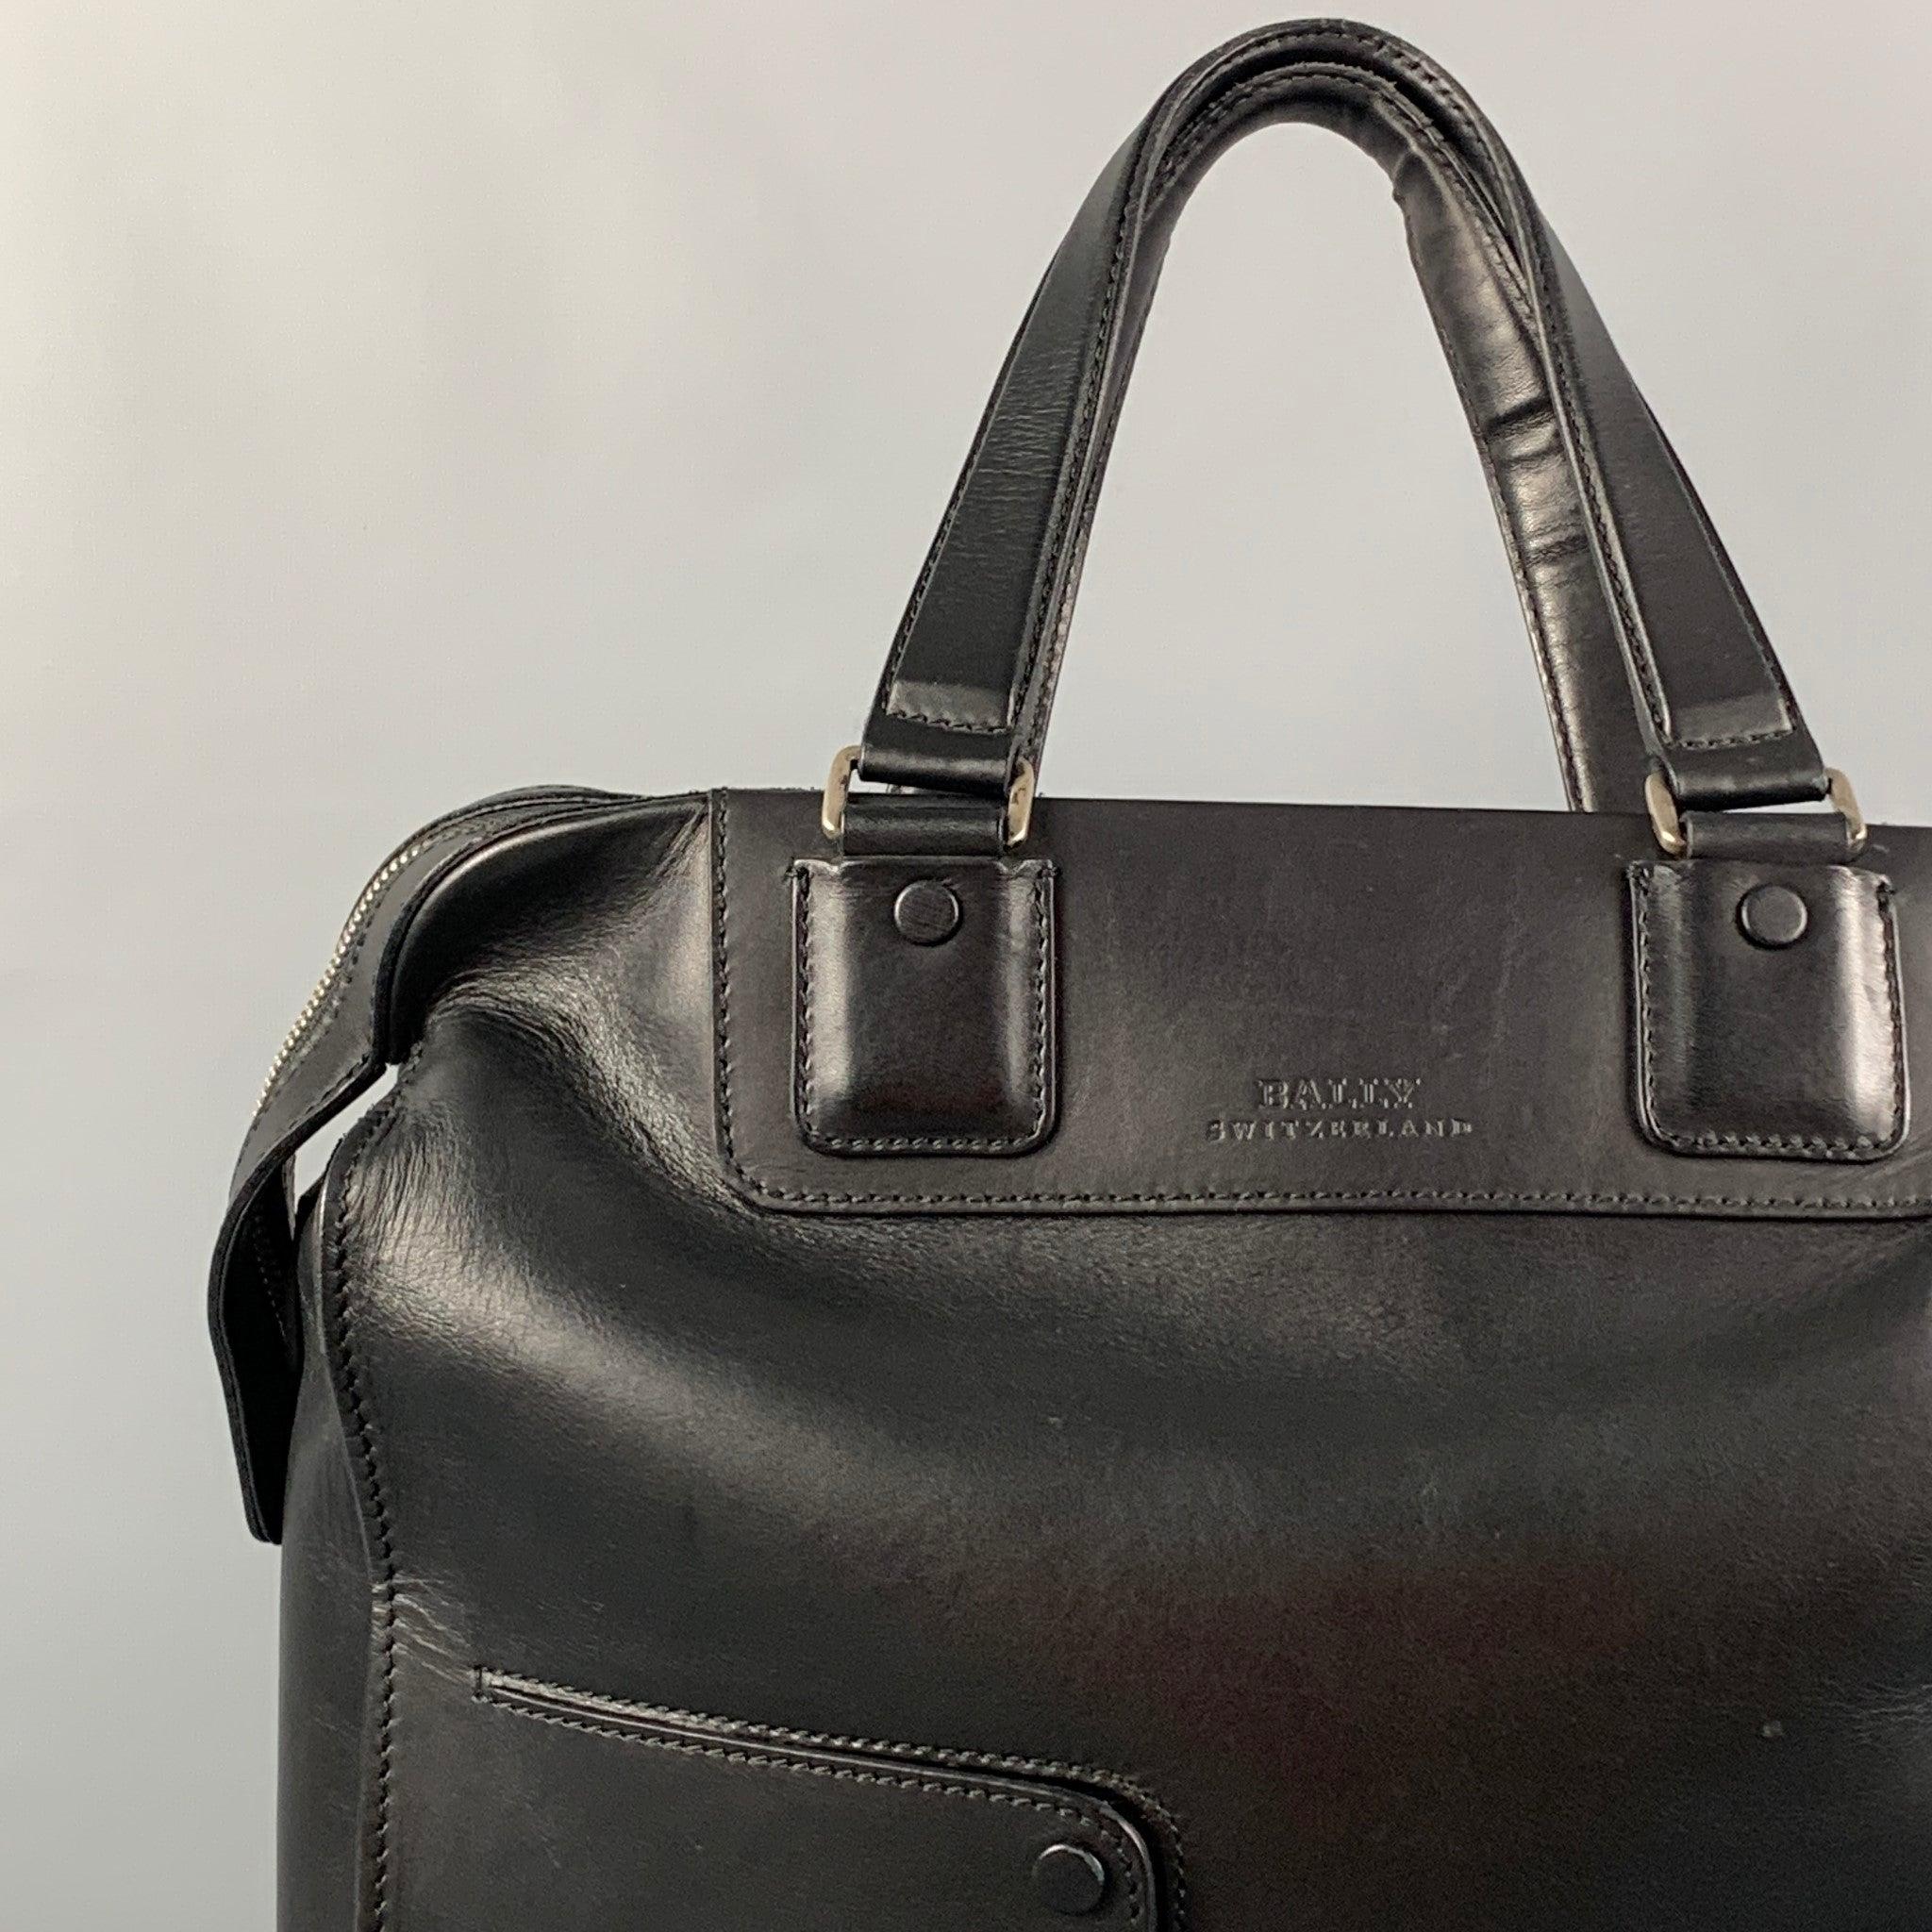 Le sac BALLY est en cuir noir et présente un style fourre-tout, des poignées supérieures, des poches frontales, des ferrures argentées et une fermeture à glissière.
Très bien
Etat d'occasion. Usure mineure. En l'état.  

Mesures : 
  Longueur